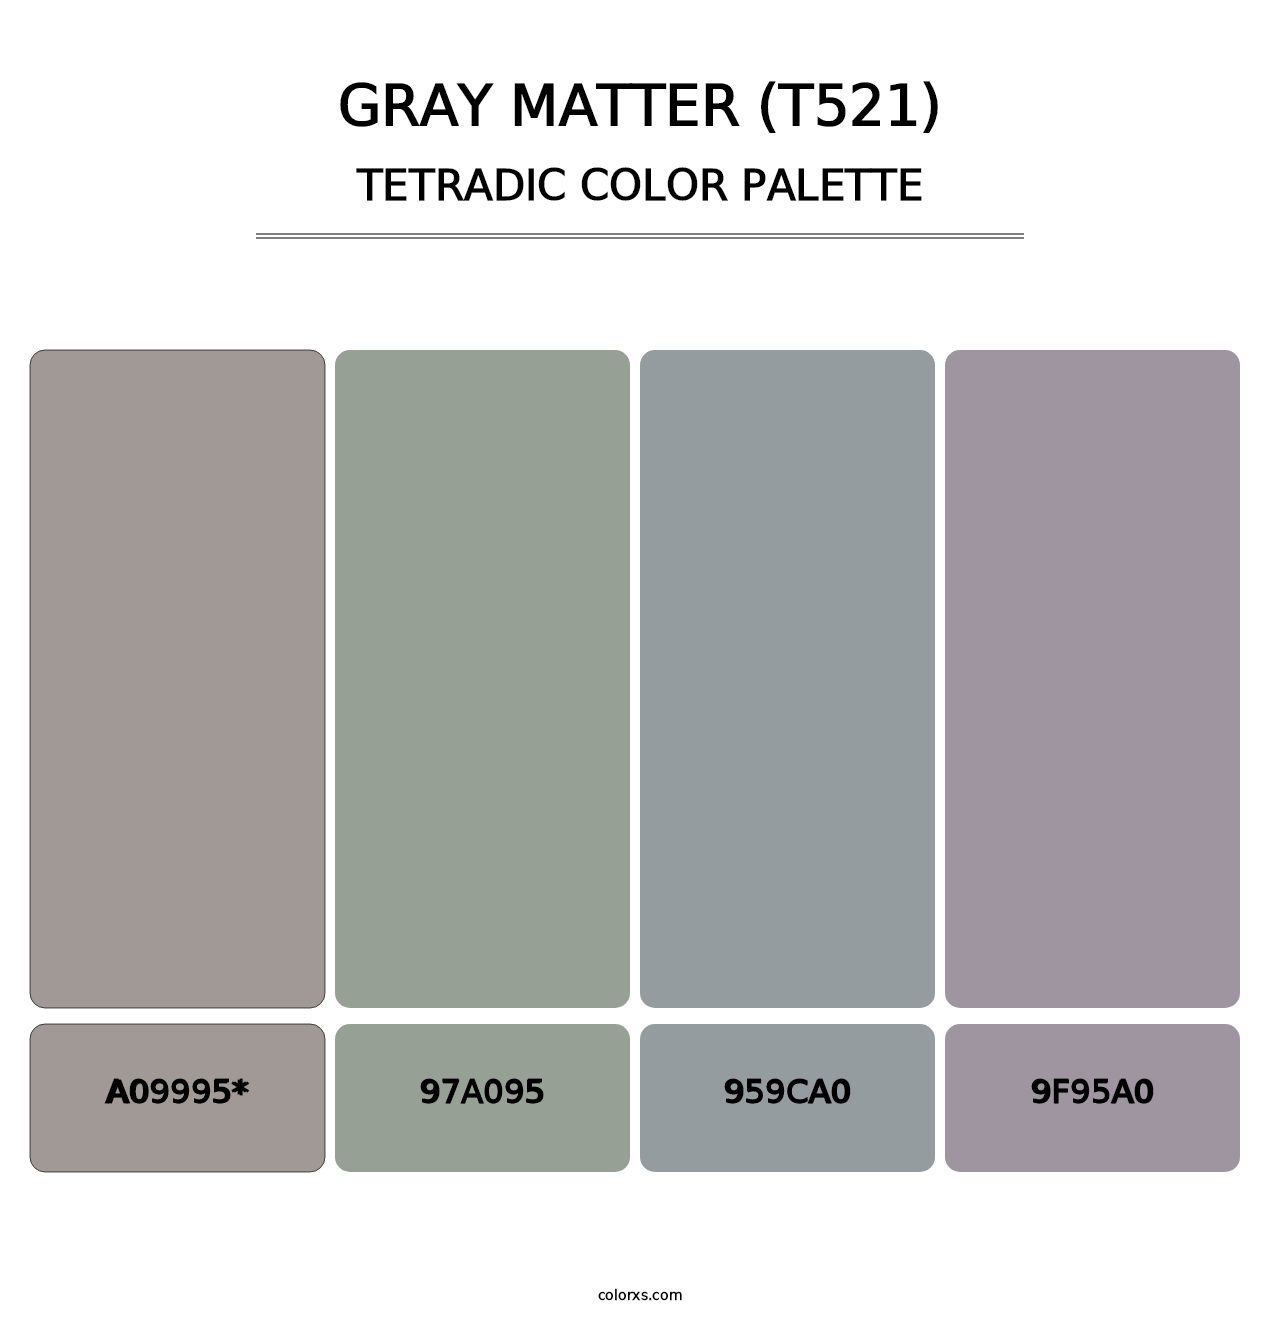 Gray Matter (T521) - Tetradic Color Palette